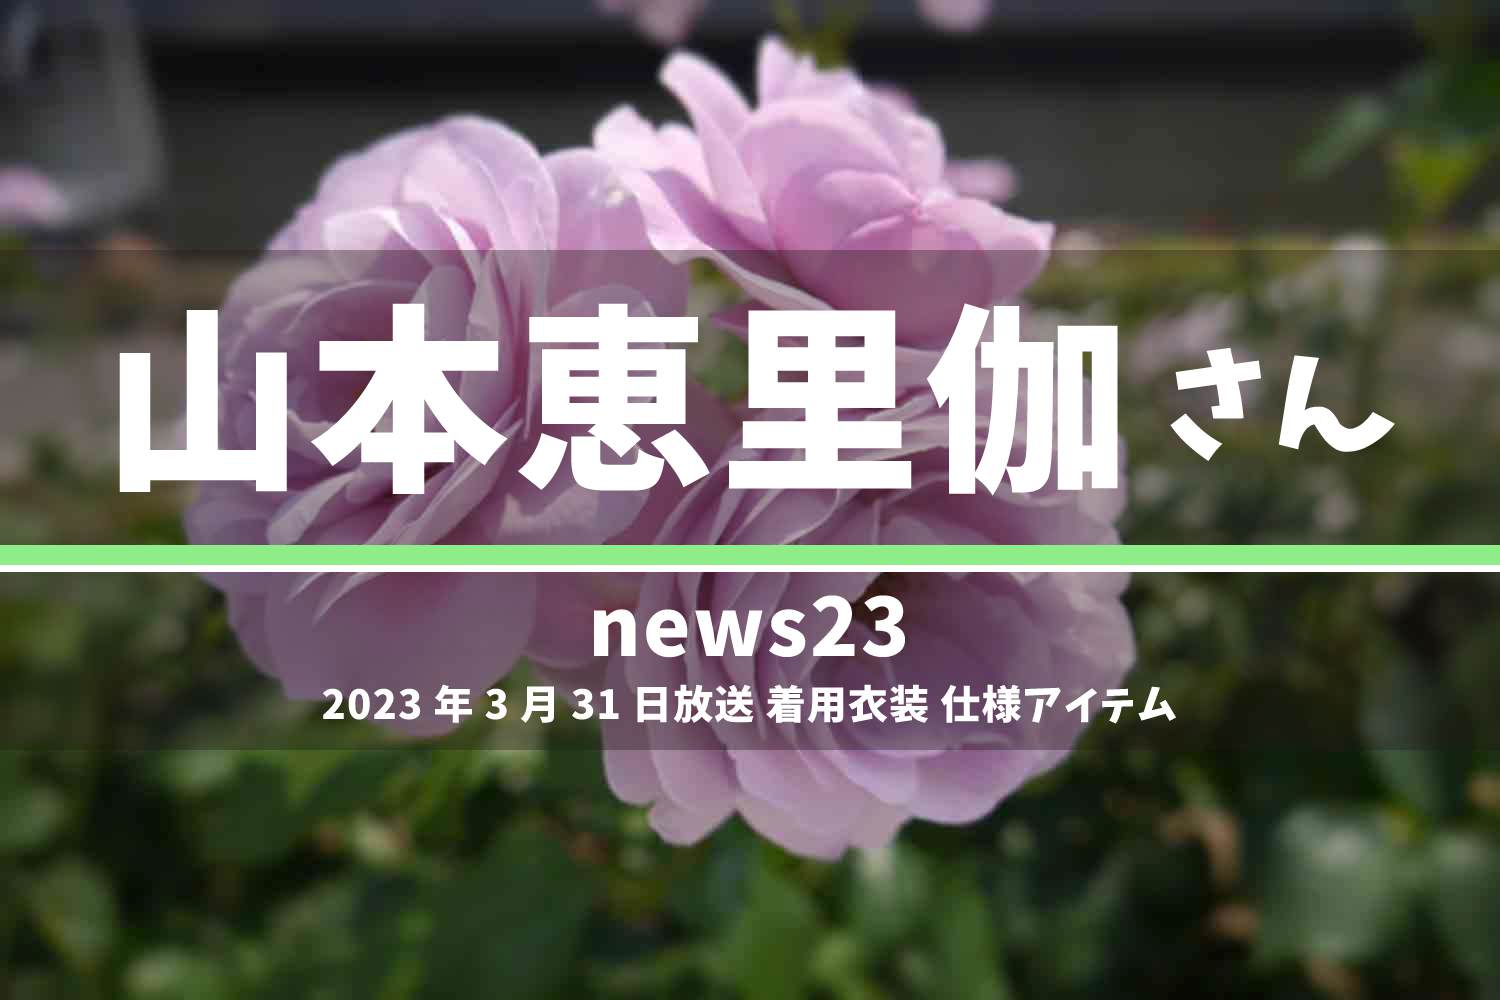 news23 山本恵里伽さん 番組 衣装 2023年3月31日放送